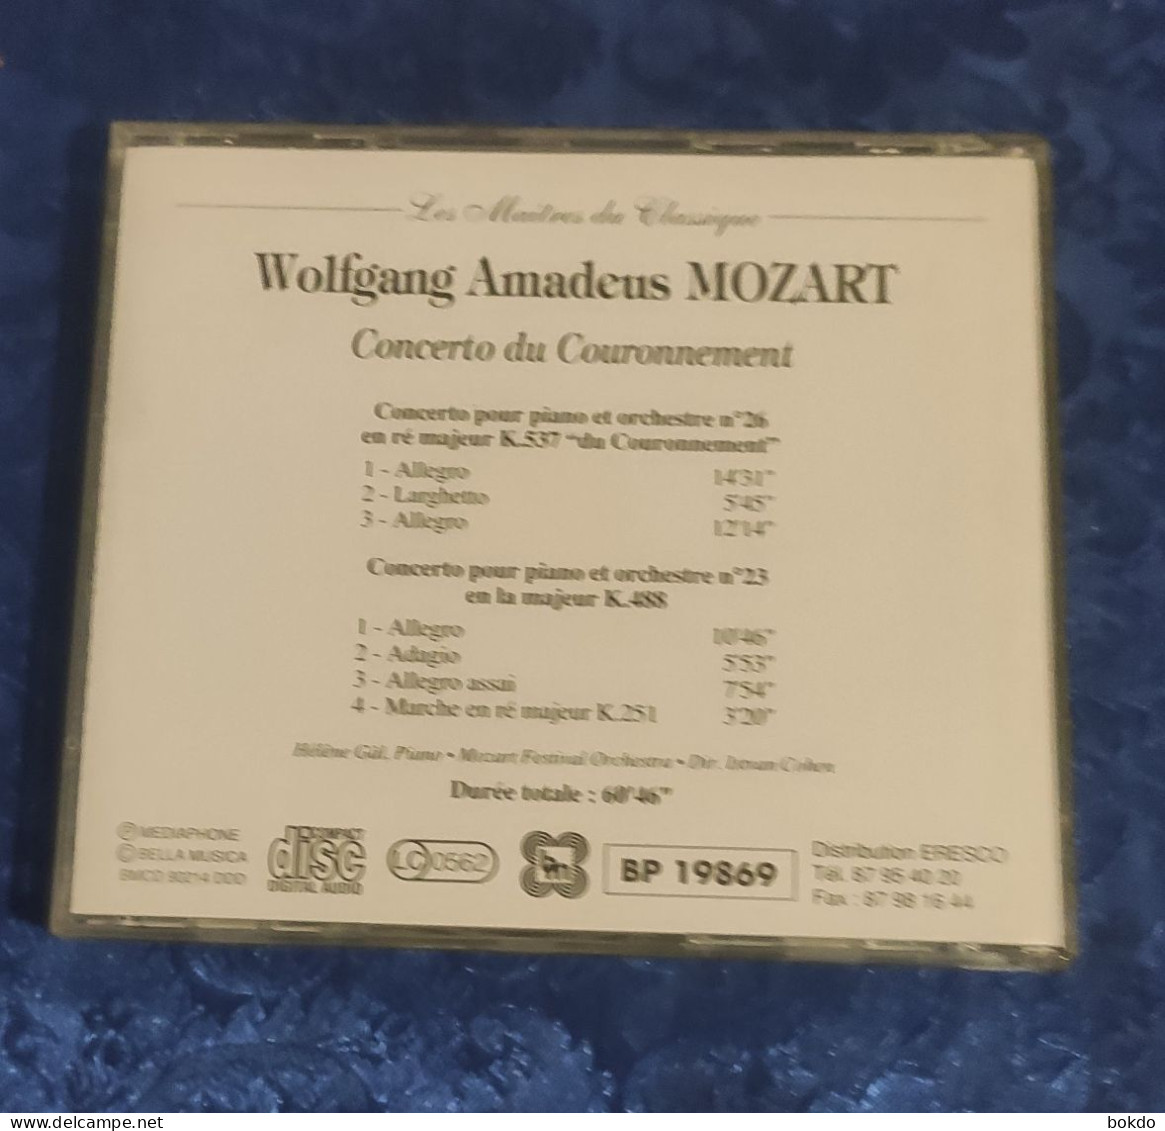 Mozart - Concerto Du Couronnement - Clásica